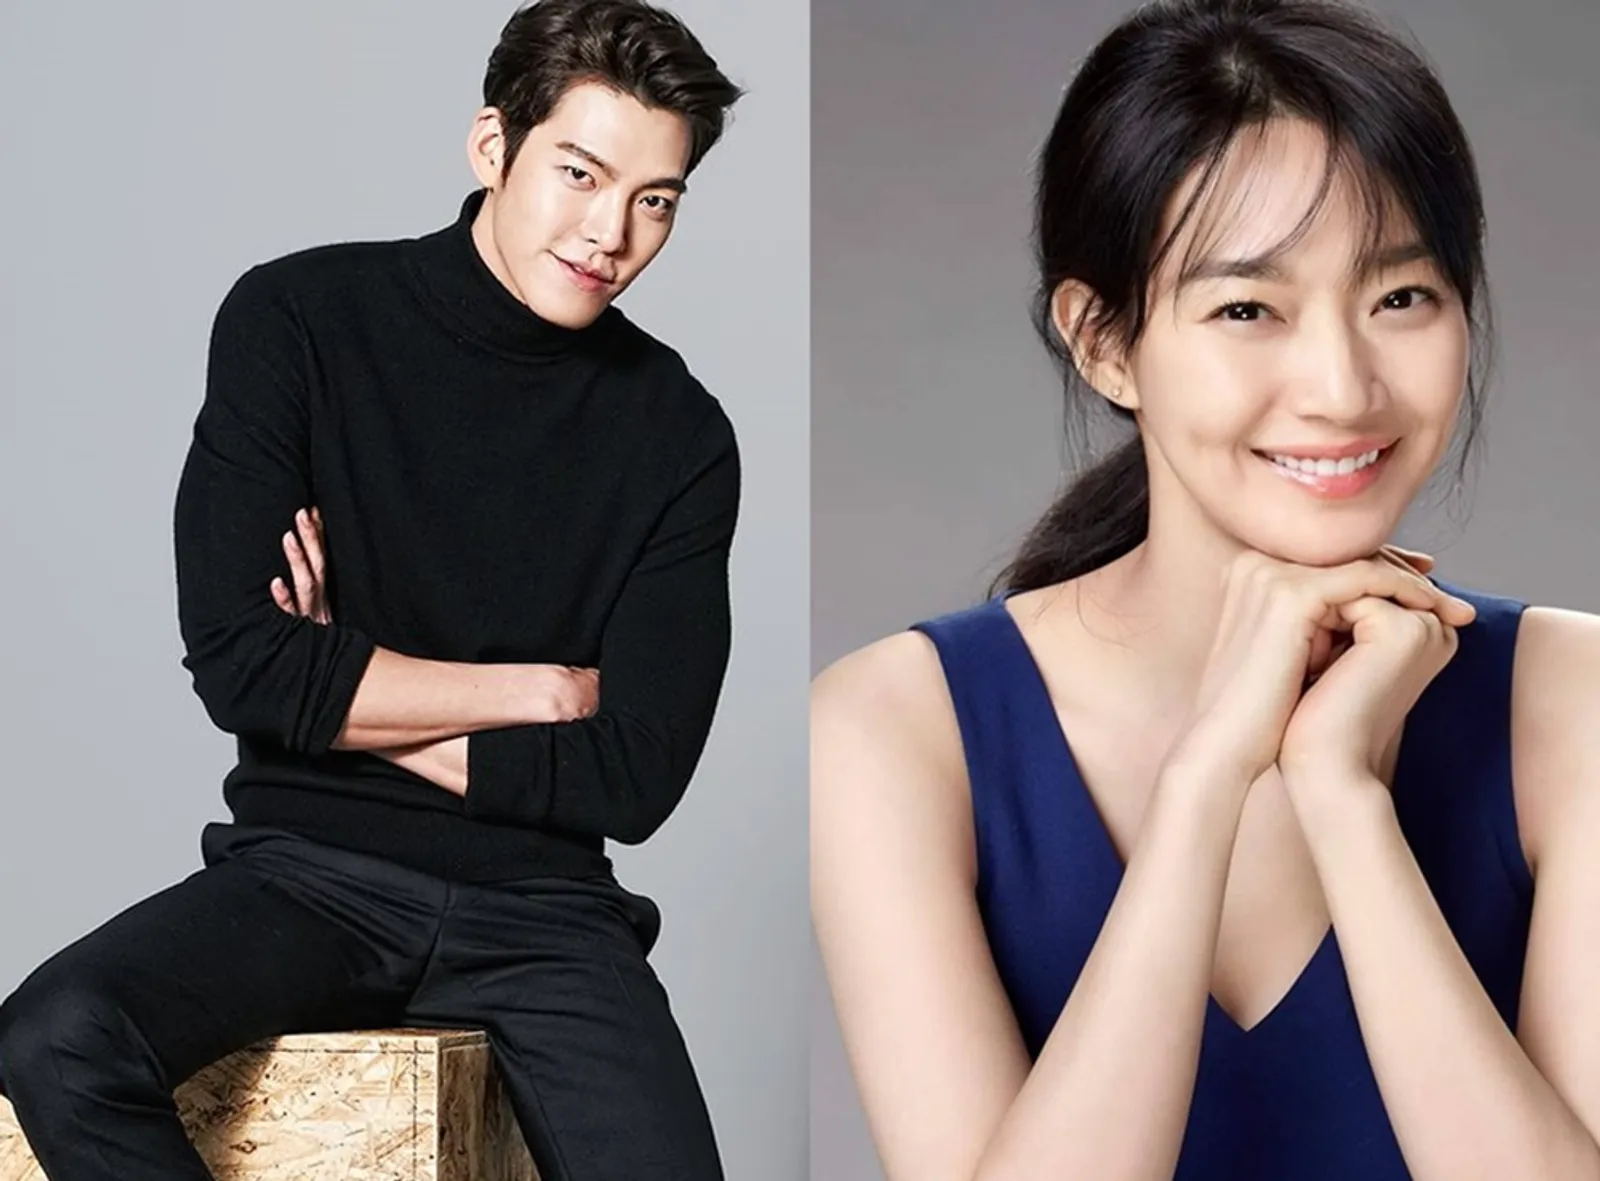 Bakal Main Bareng, 5 Fakta Drama Terbaru Kim Woo Bin & Shin Min Ah